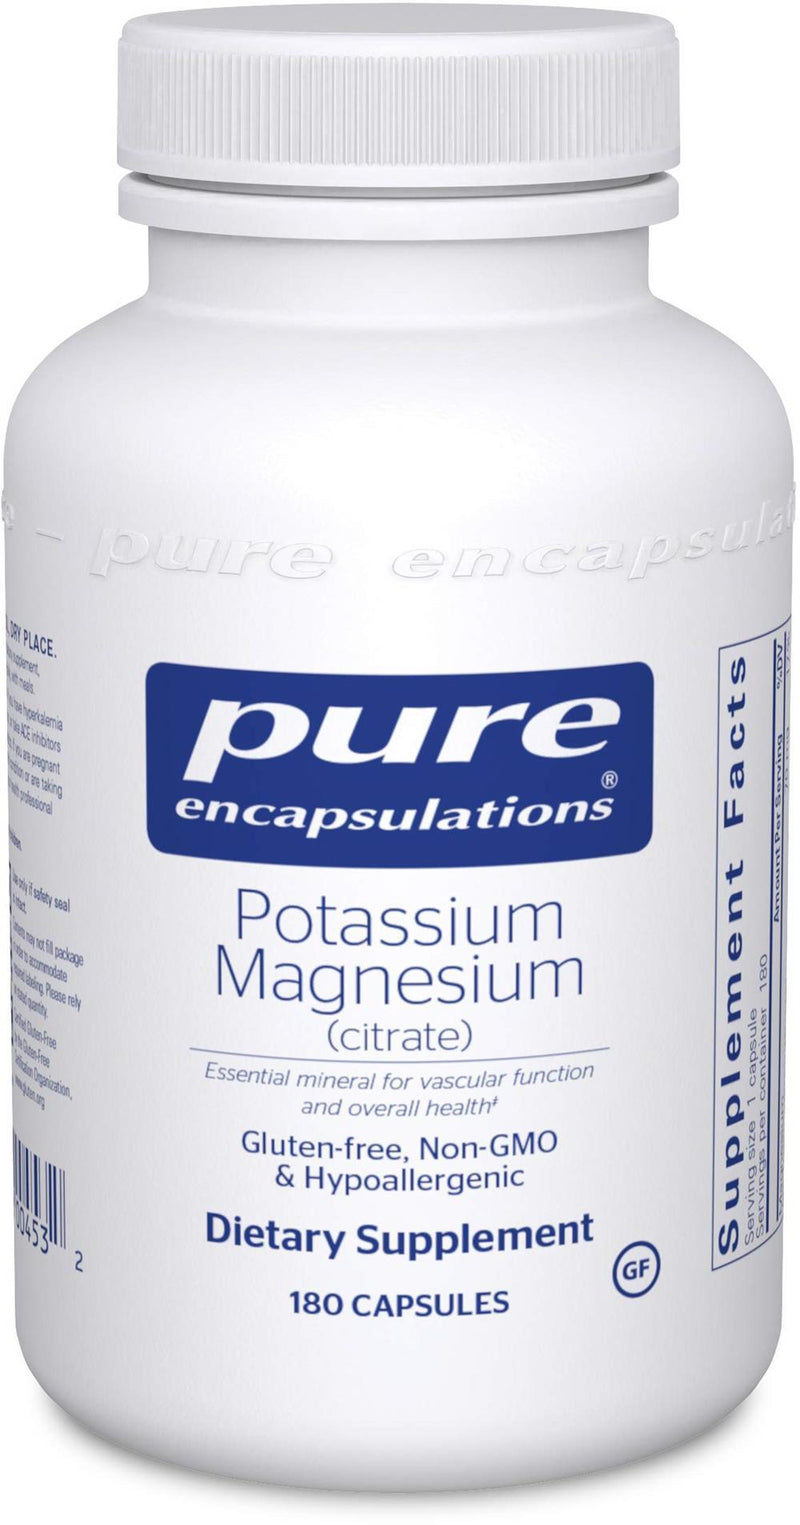 Pure Encapsulations Potassium Magnesium (citrate) -- 180 Capsules